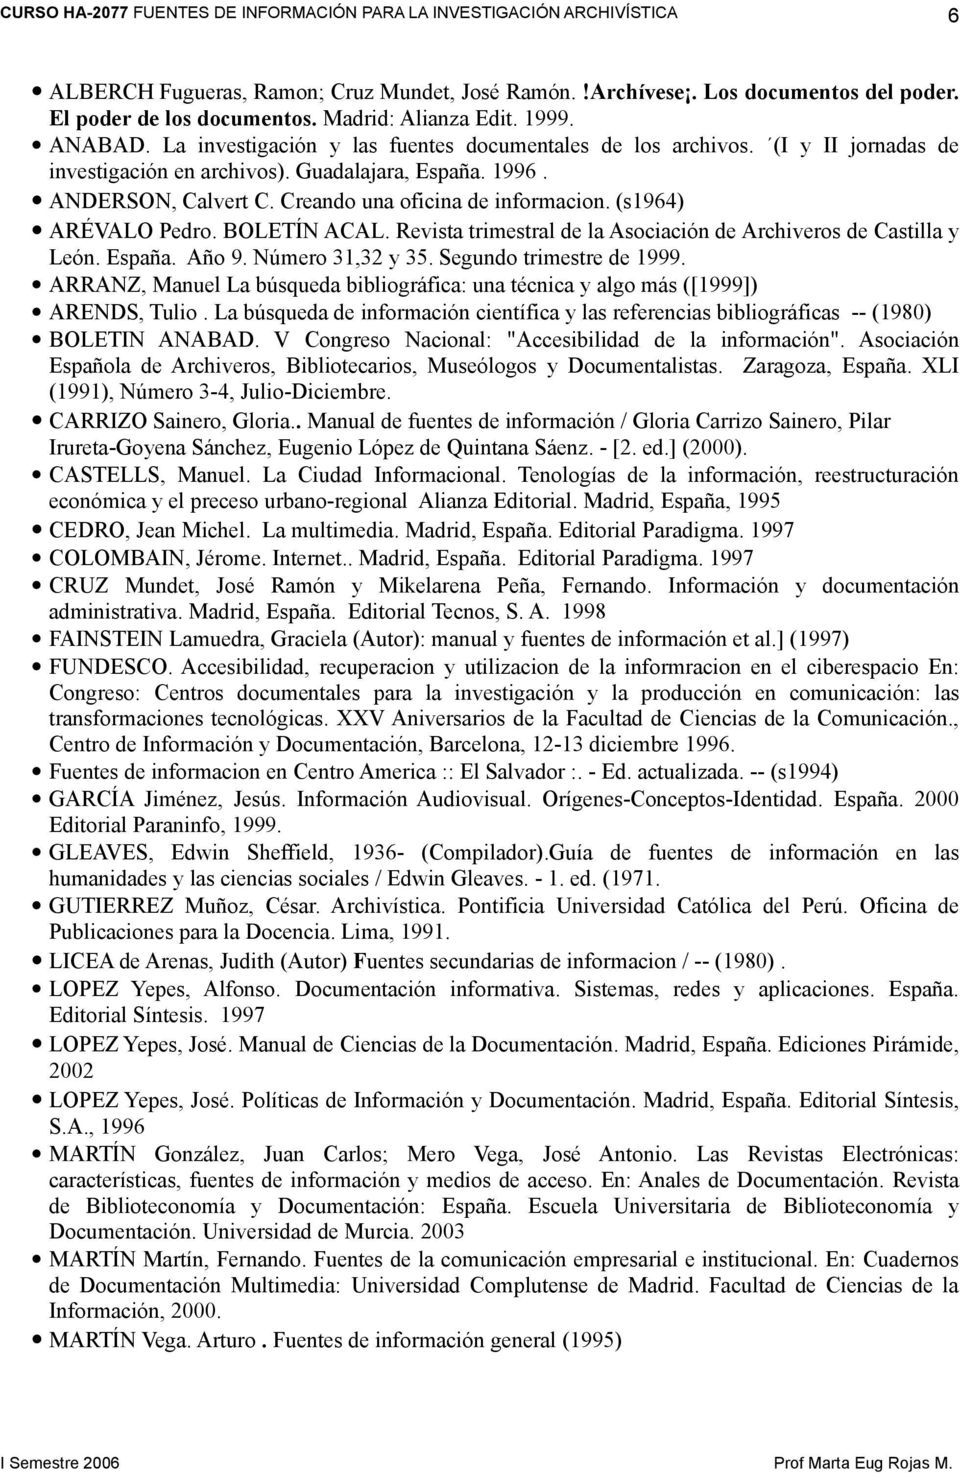 (s1964) ARÉVALO Pedro. BOLETÍN ACAL. Revista trimestral de la Asociación de Archiveros de Castilla y León. España. Año 9. Número 31,32 y 35. Segundo trimestre de 1999.